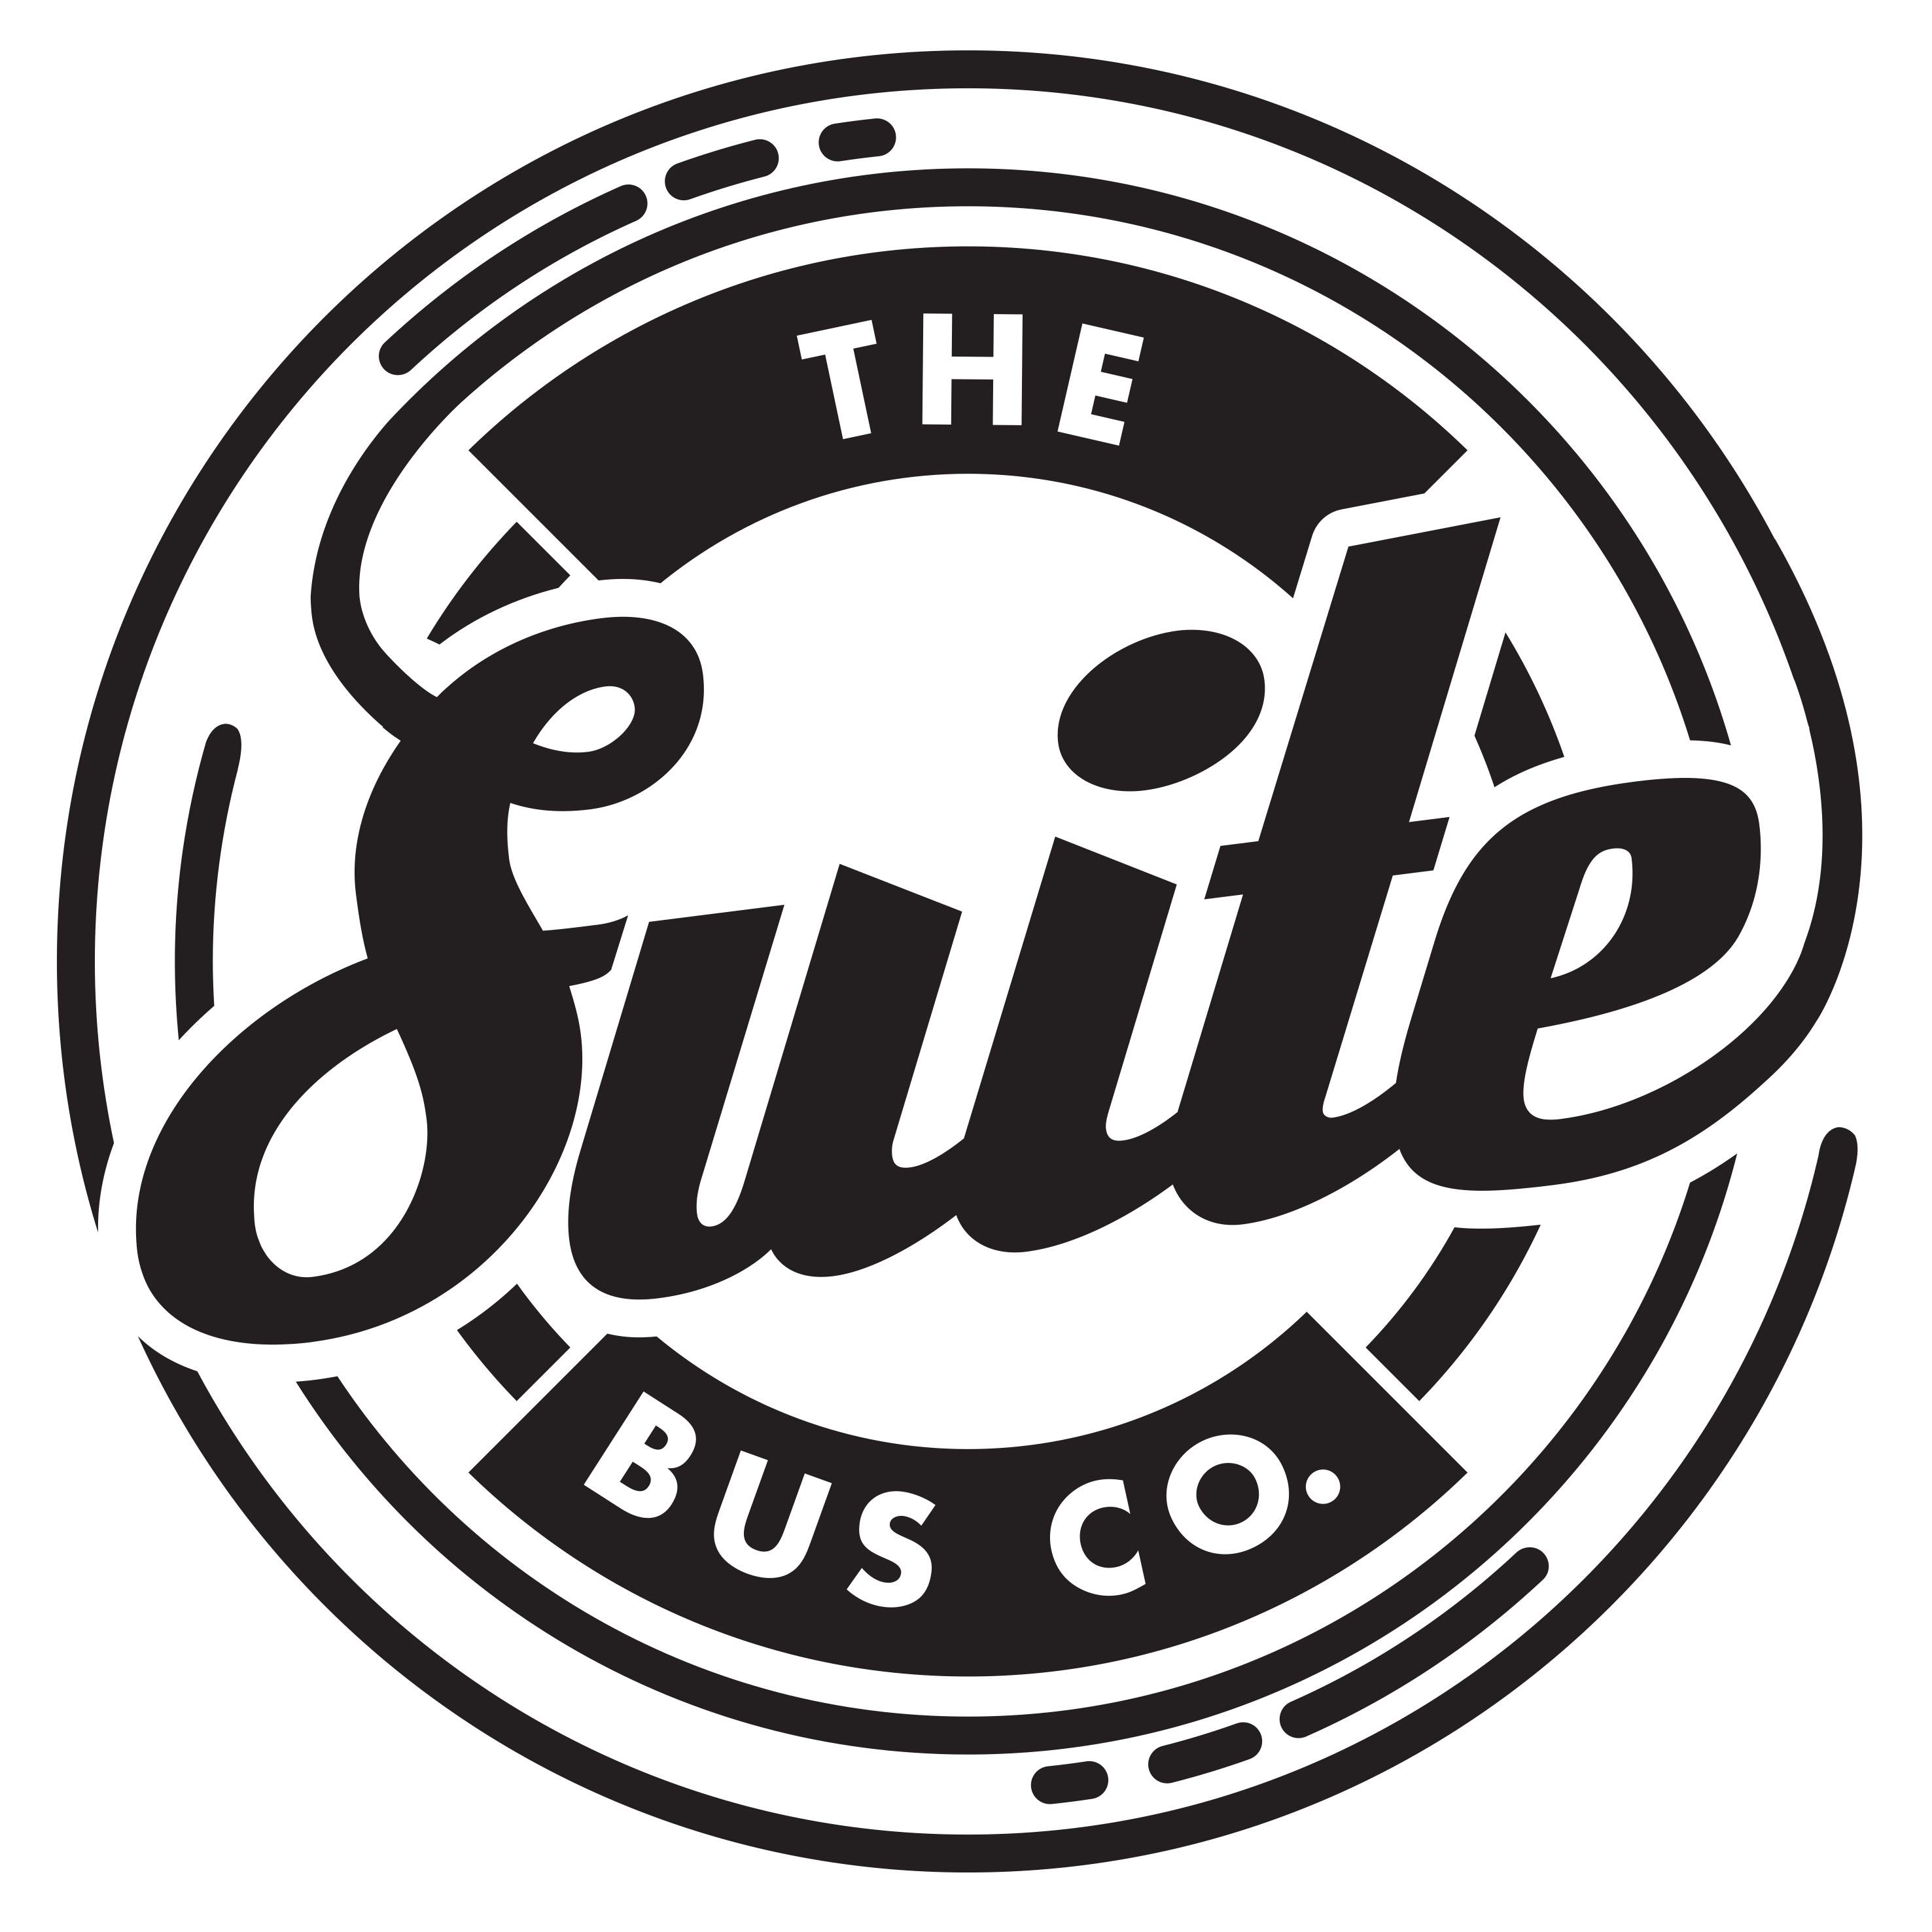 Suite Bus Company